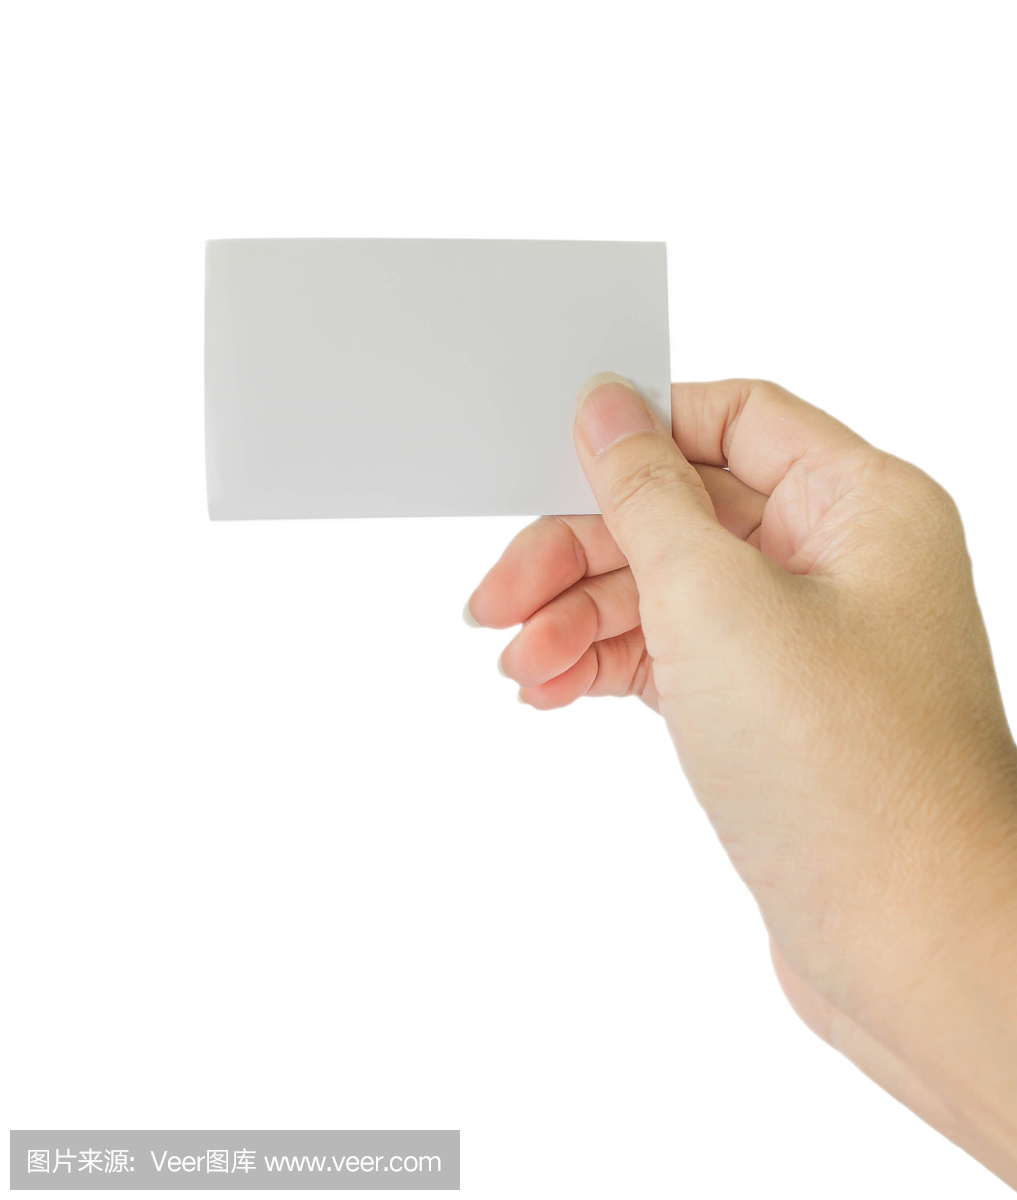 手持名片,信用卡或空白纸的概念照片